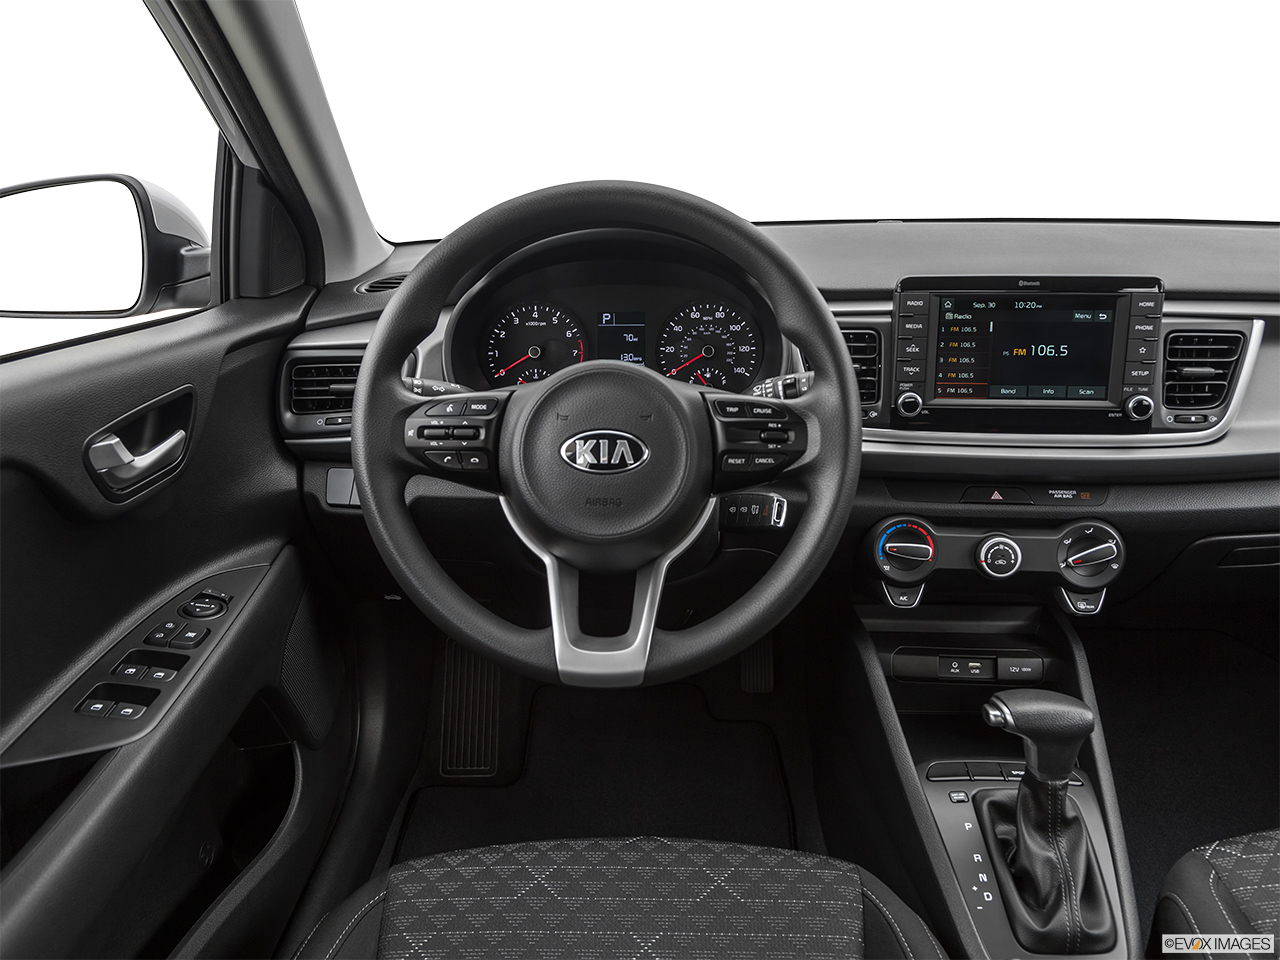 2019 Kia Rio 5-door S Steering wheel/Center Console. 